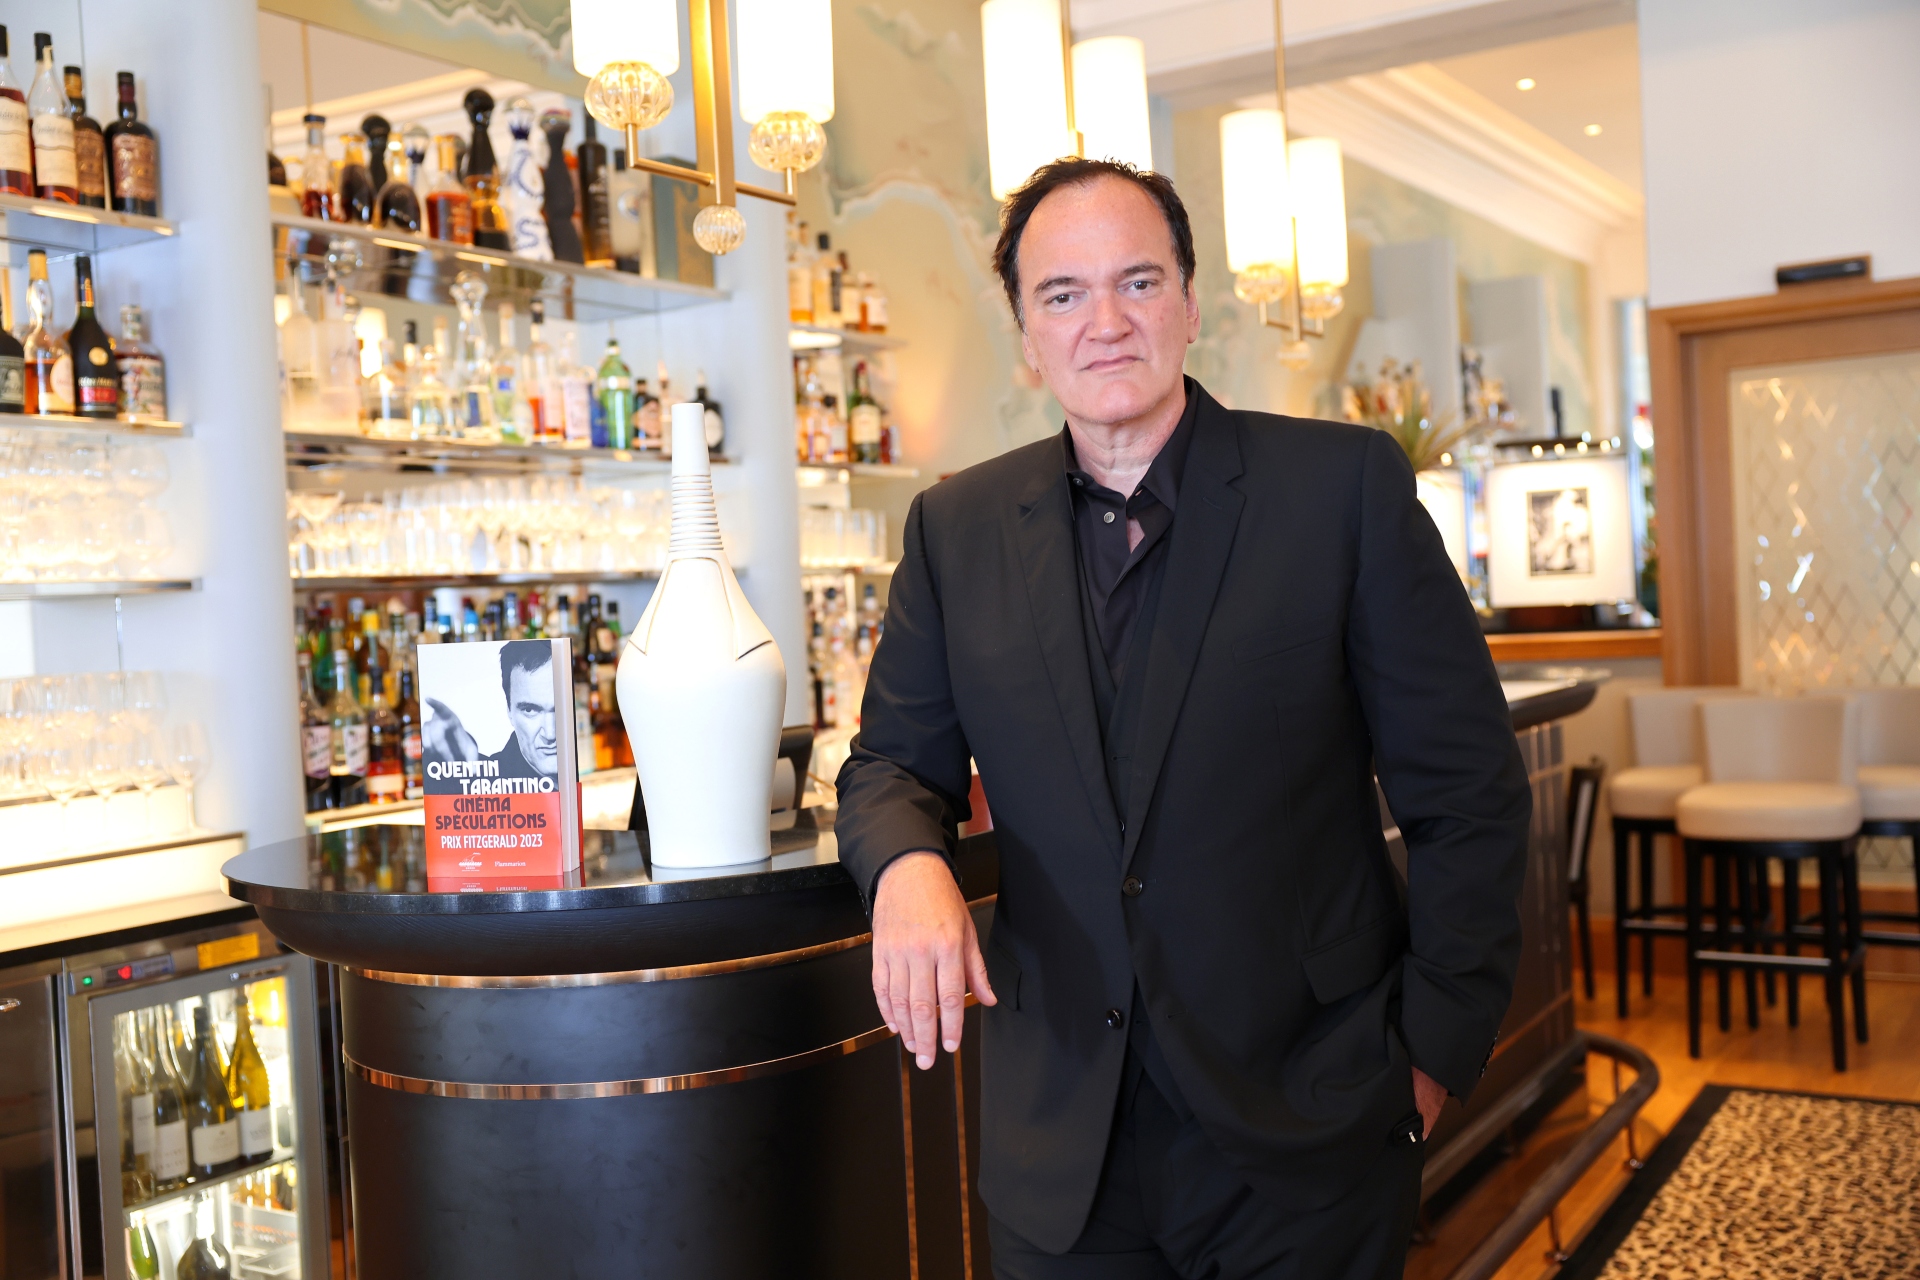 Quentin Tarantino é conhecido por revitalizar carreiras 